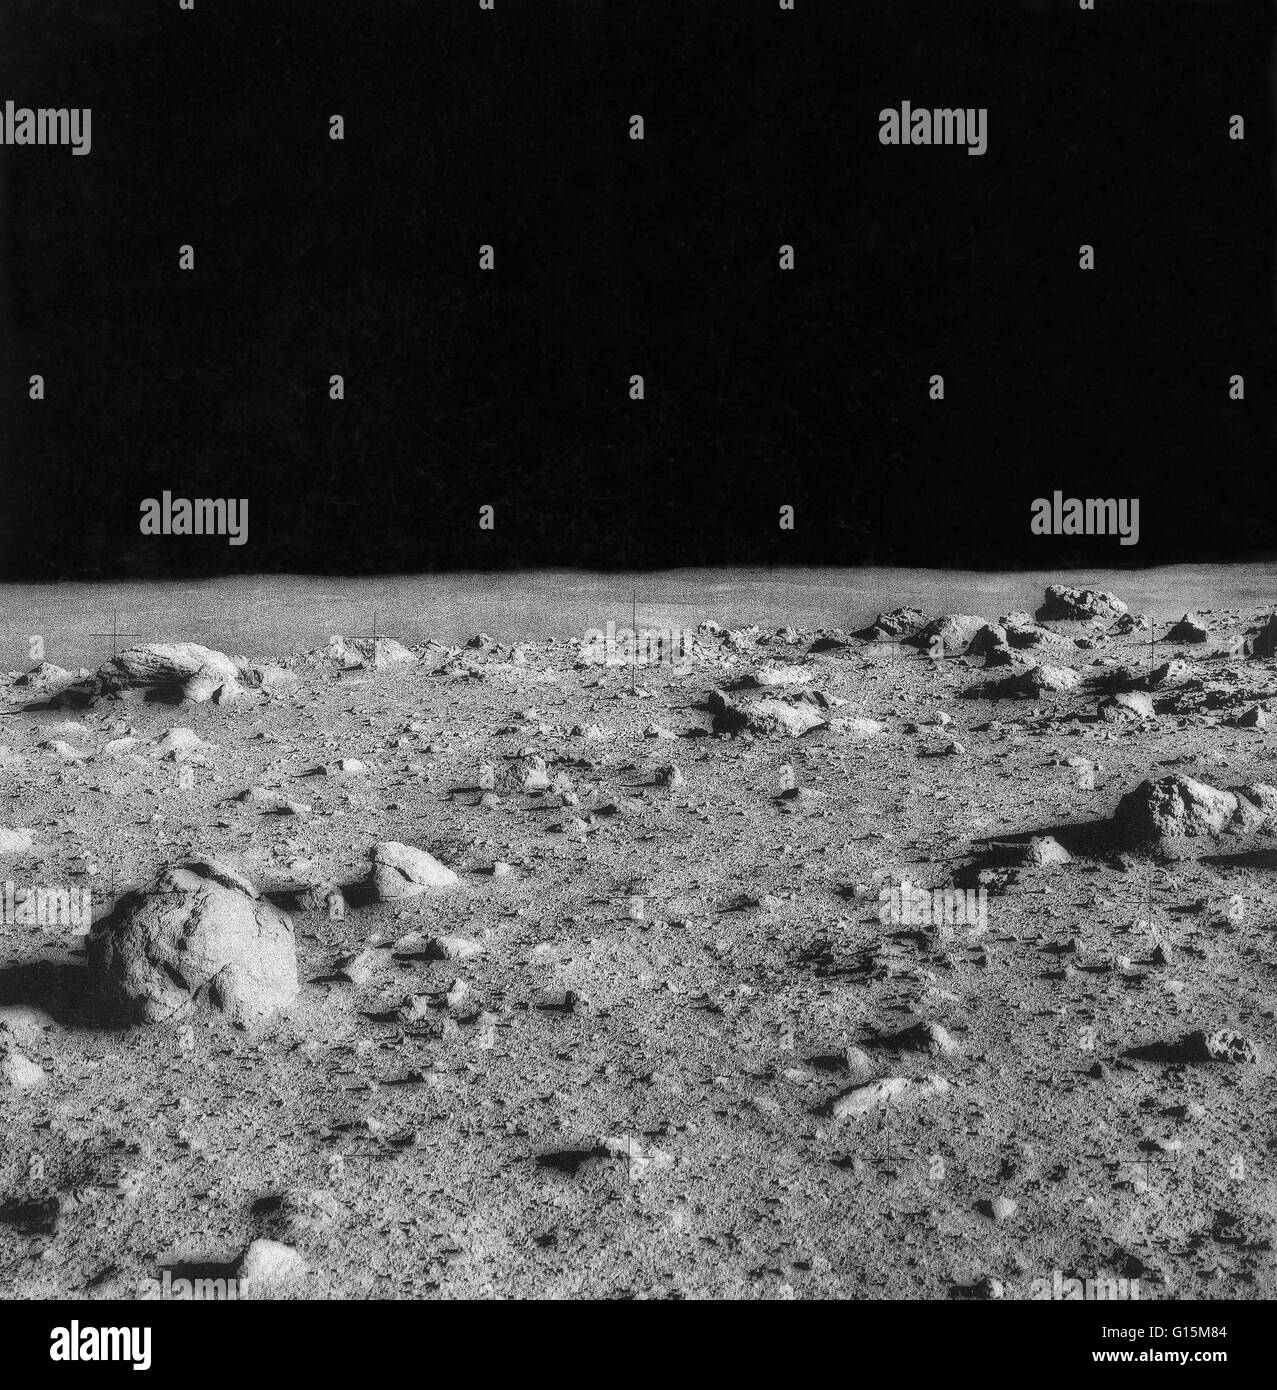 La surface lunaire, prises au cours de la mission Apollo 14. Apollo 14 était la huitième mission habitée dans l'United States programme Apollo, et le troisième à la terre sur la Lune. C'était la dernière des missions 'H', les atterrissages ciblées avec des séjours de deux jours sur la Lune wi Banque D'Images